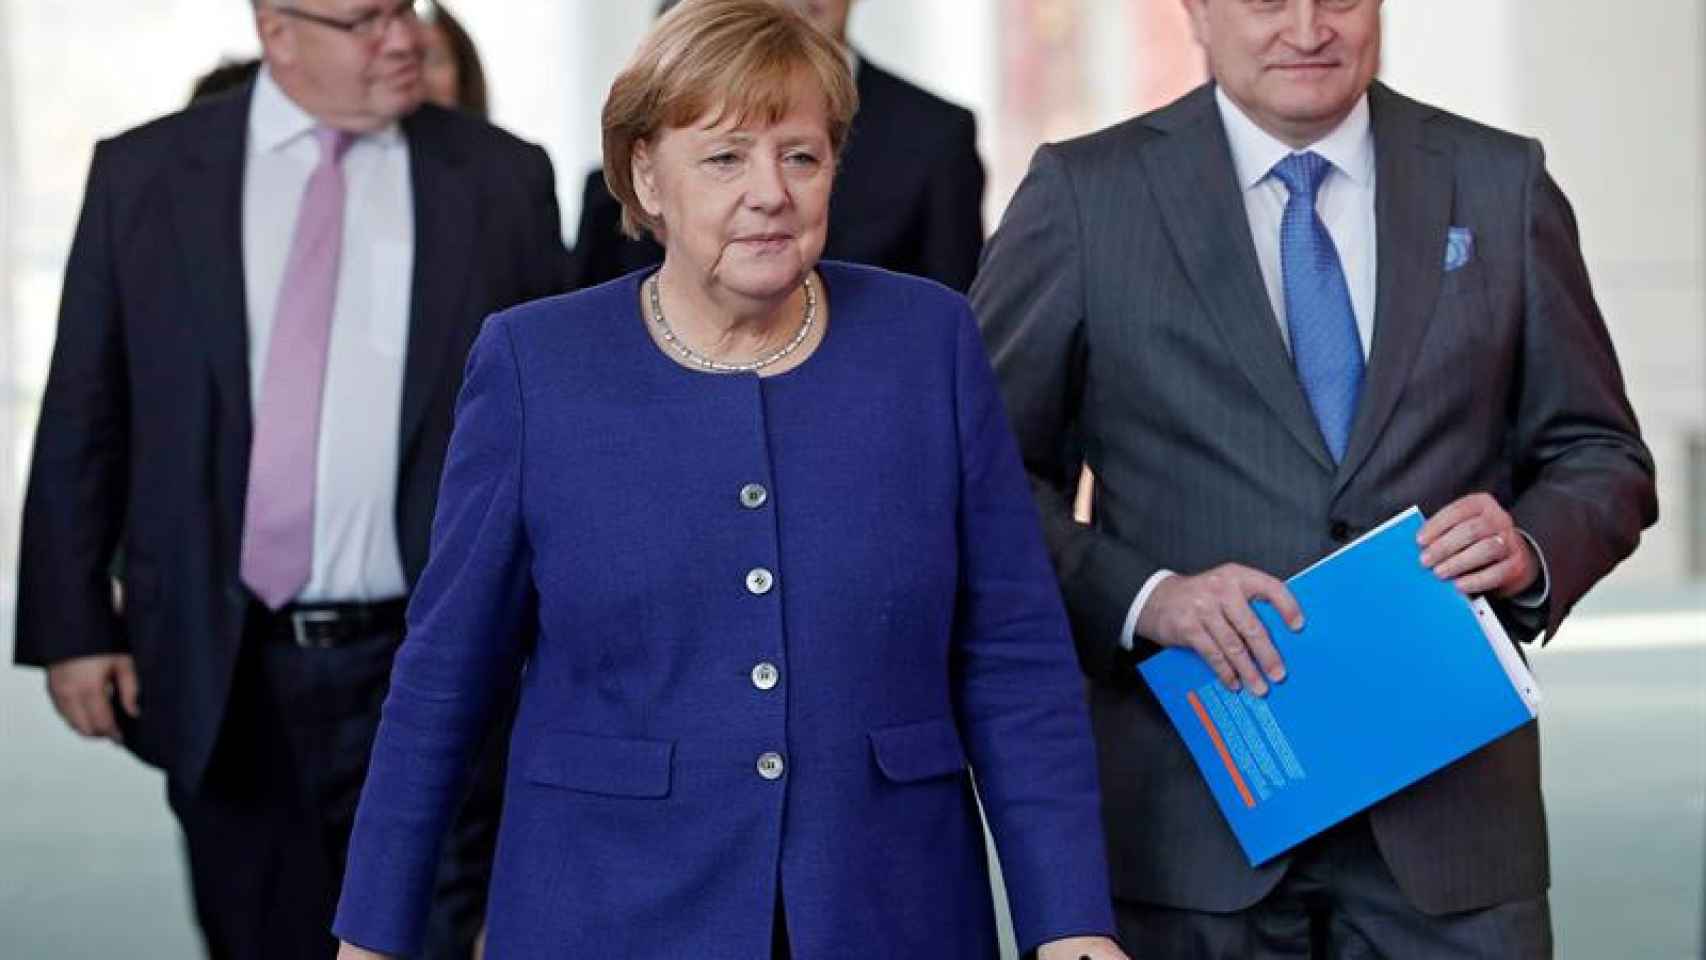 La canciller alemana, Angela Merkel, acompañada por el presidente del Consejo de Expertos, Christoph Schmidt, se dirige a presentar el informe de desarrollo económico / EFE